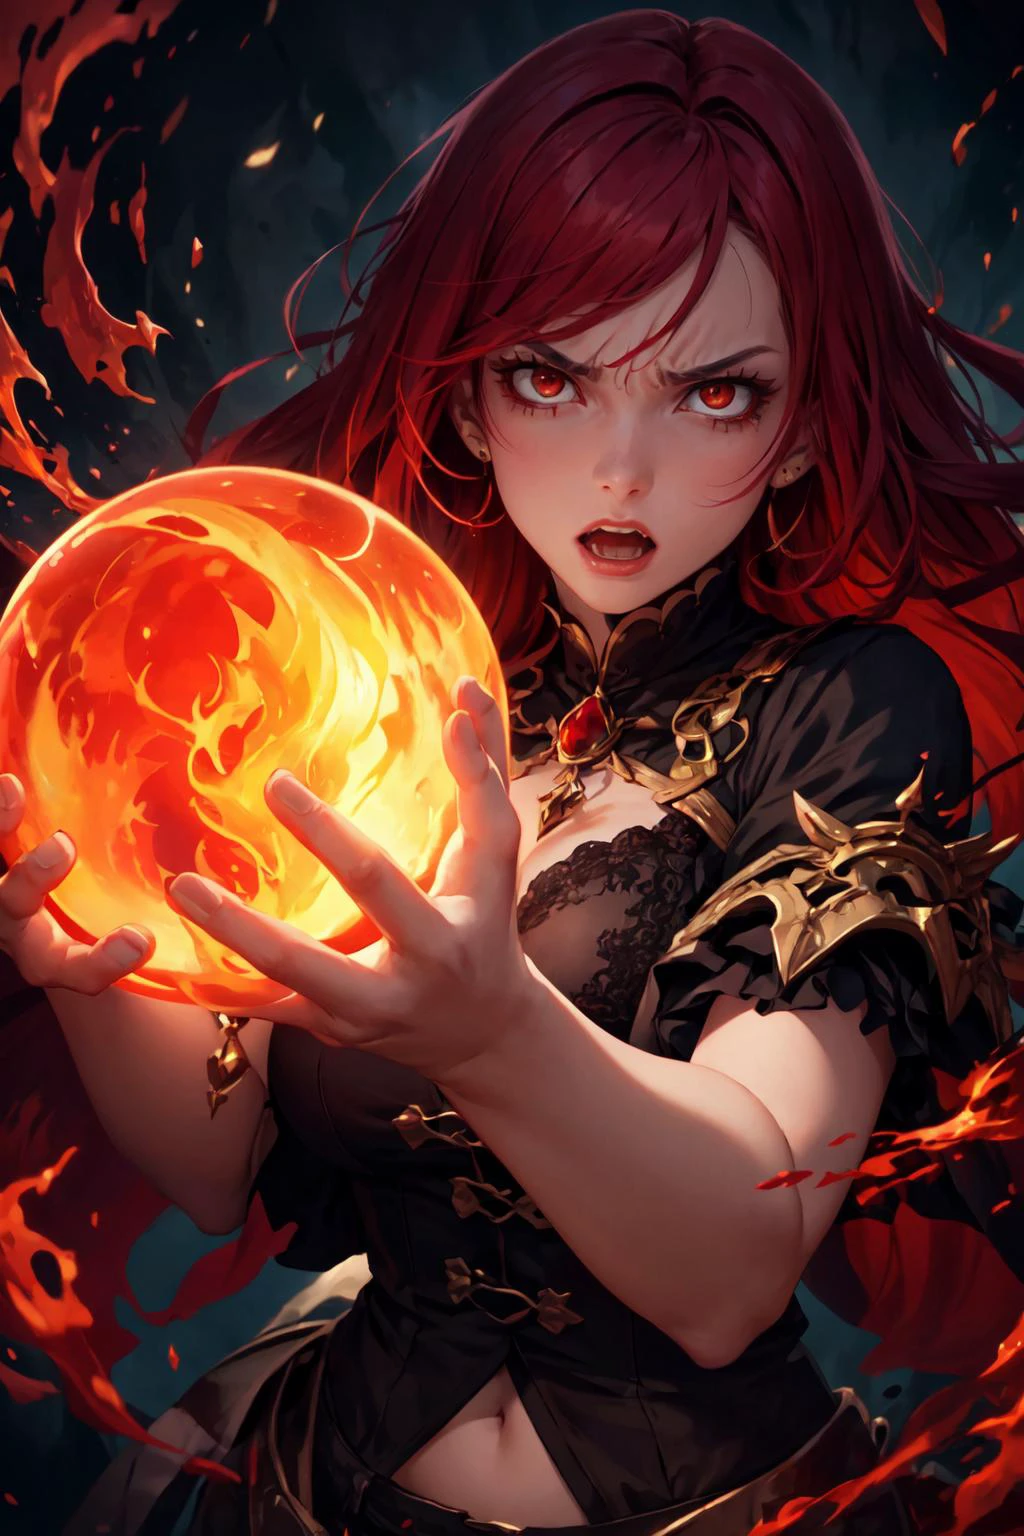 一个有着火红头发的愤怒女孩凝视着水晶球并召唤恶魔., (高分辨率, 非常详细:1.2), 审美的, 杰作, 